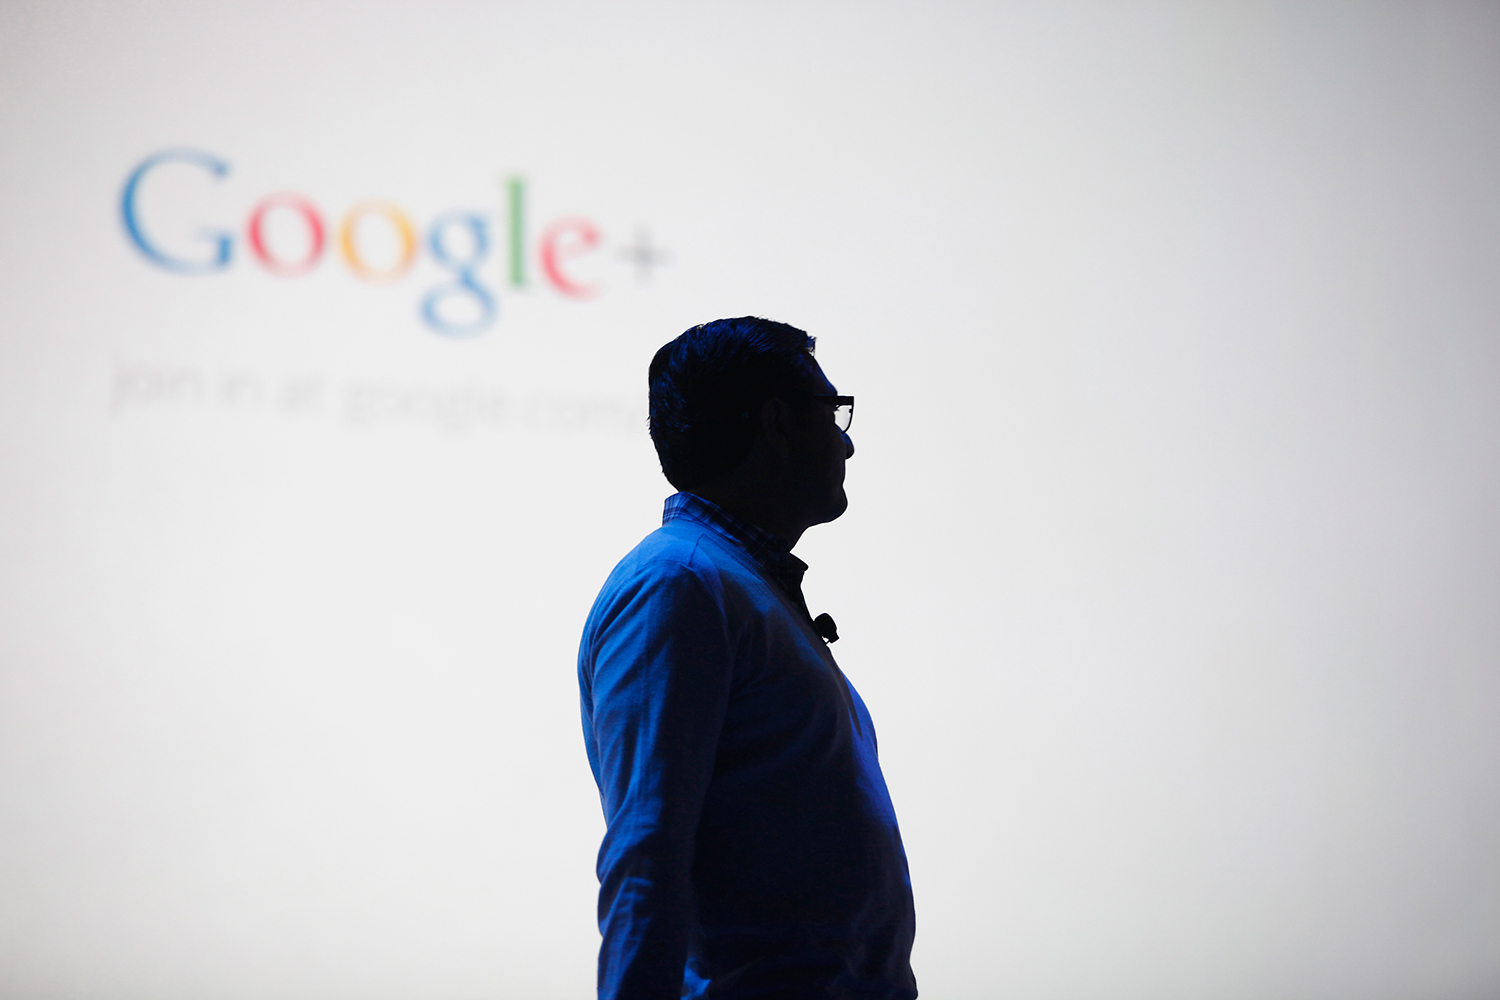 El fundador de Google+ regresa al mundo de la tecnología con un nuevo proyecto